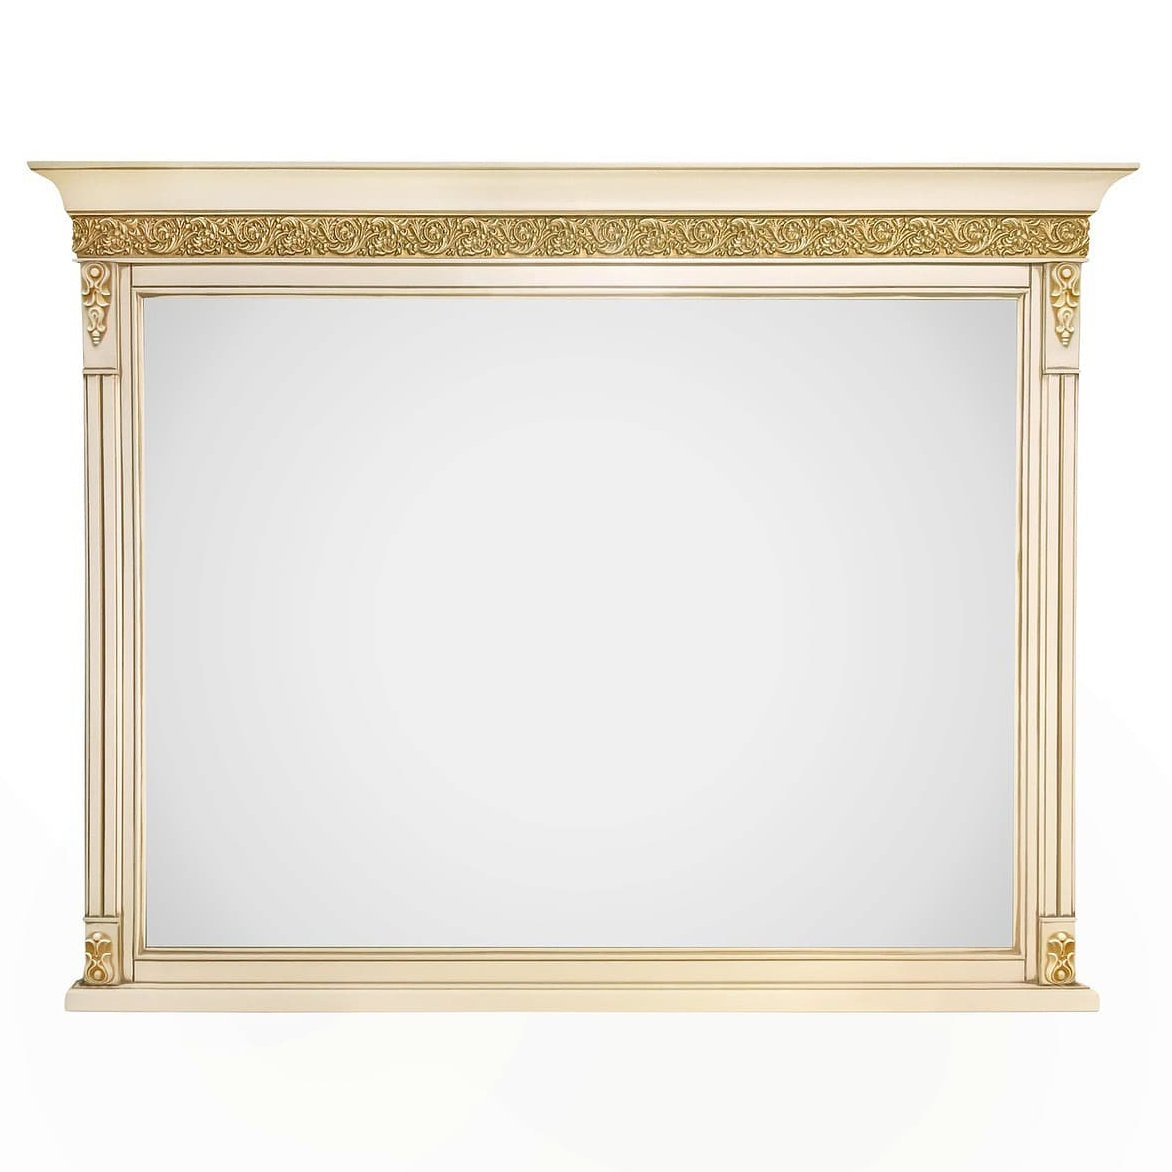 Зеркало Timber Неаполь Т-400, навесное цвет: ваниль с золотом (T-405)T-405